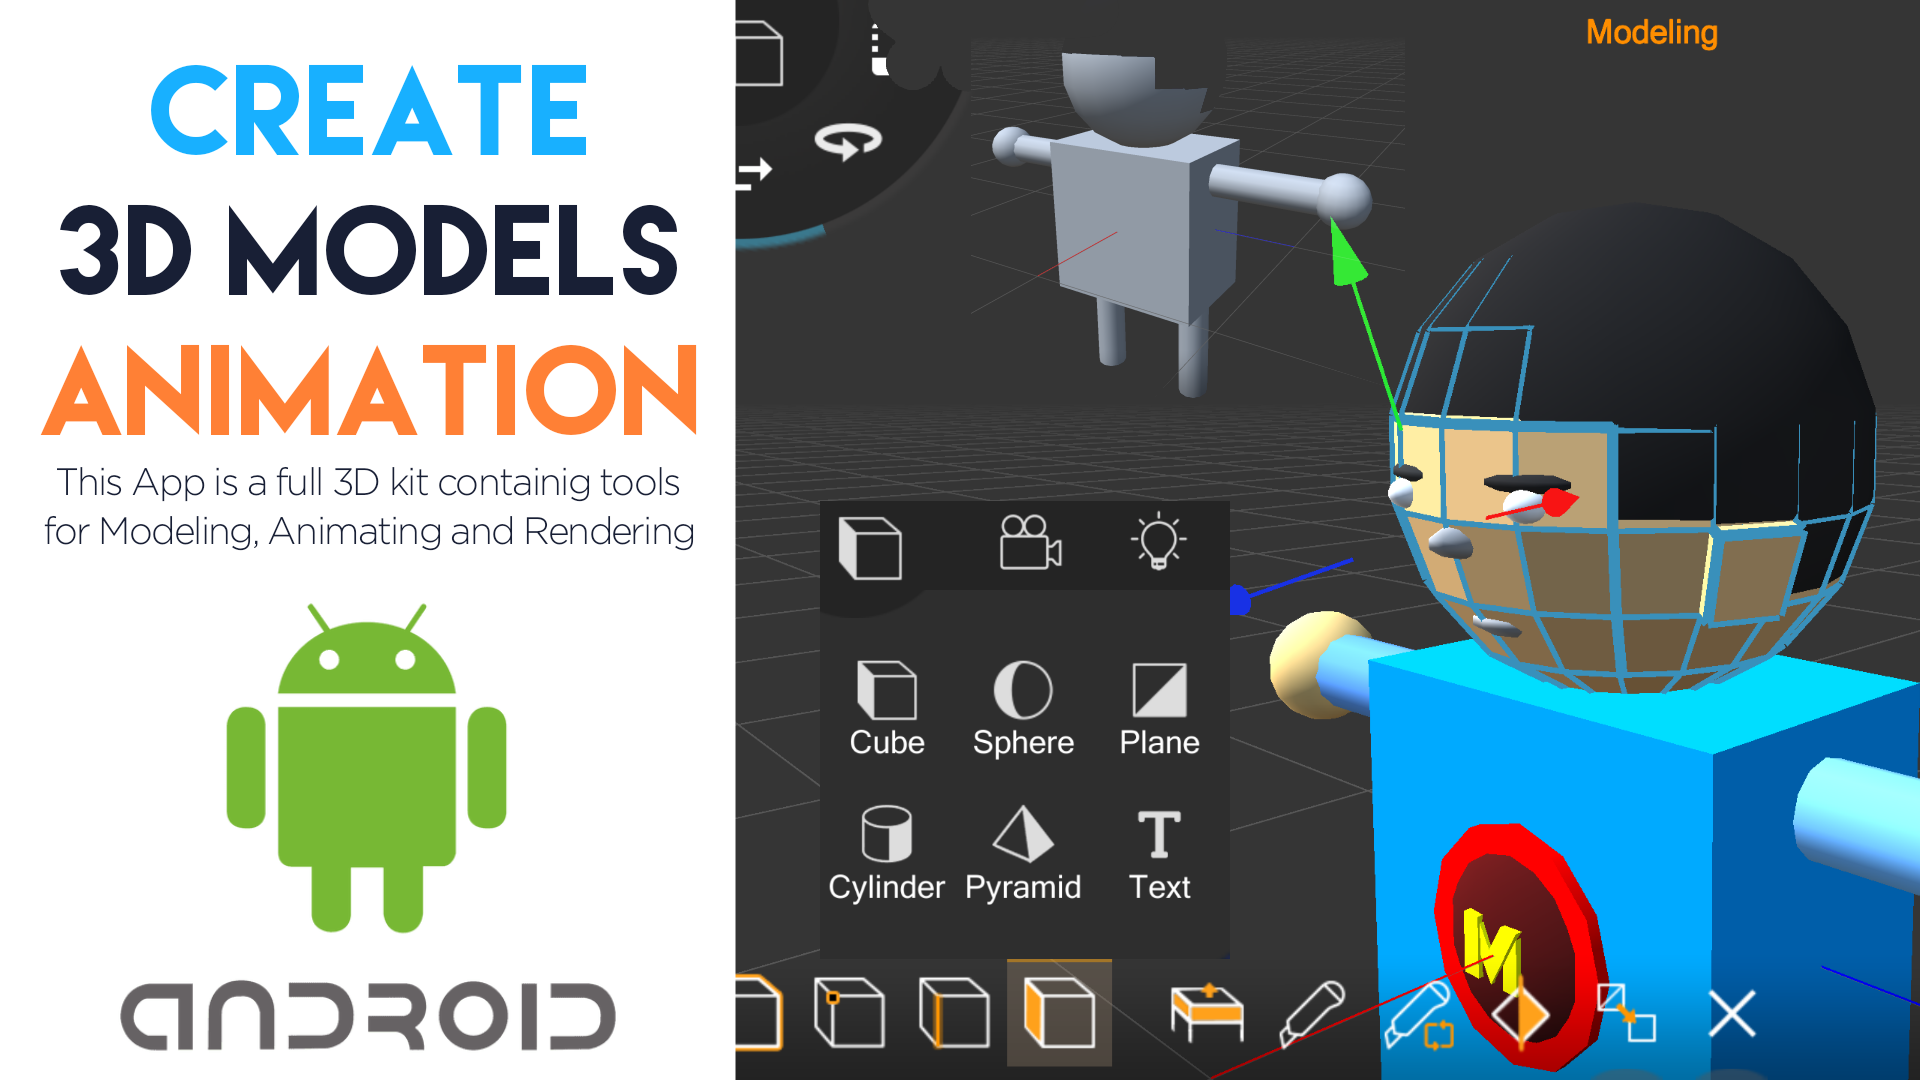 Download Prisma 3D Android App Free - MTC TUTORIALS